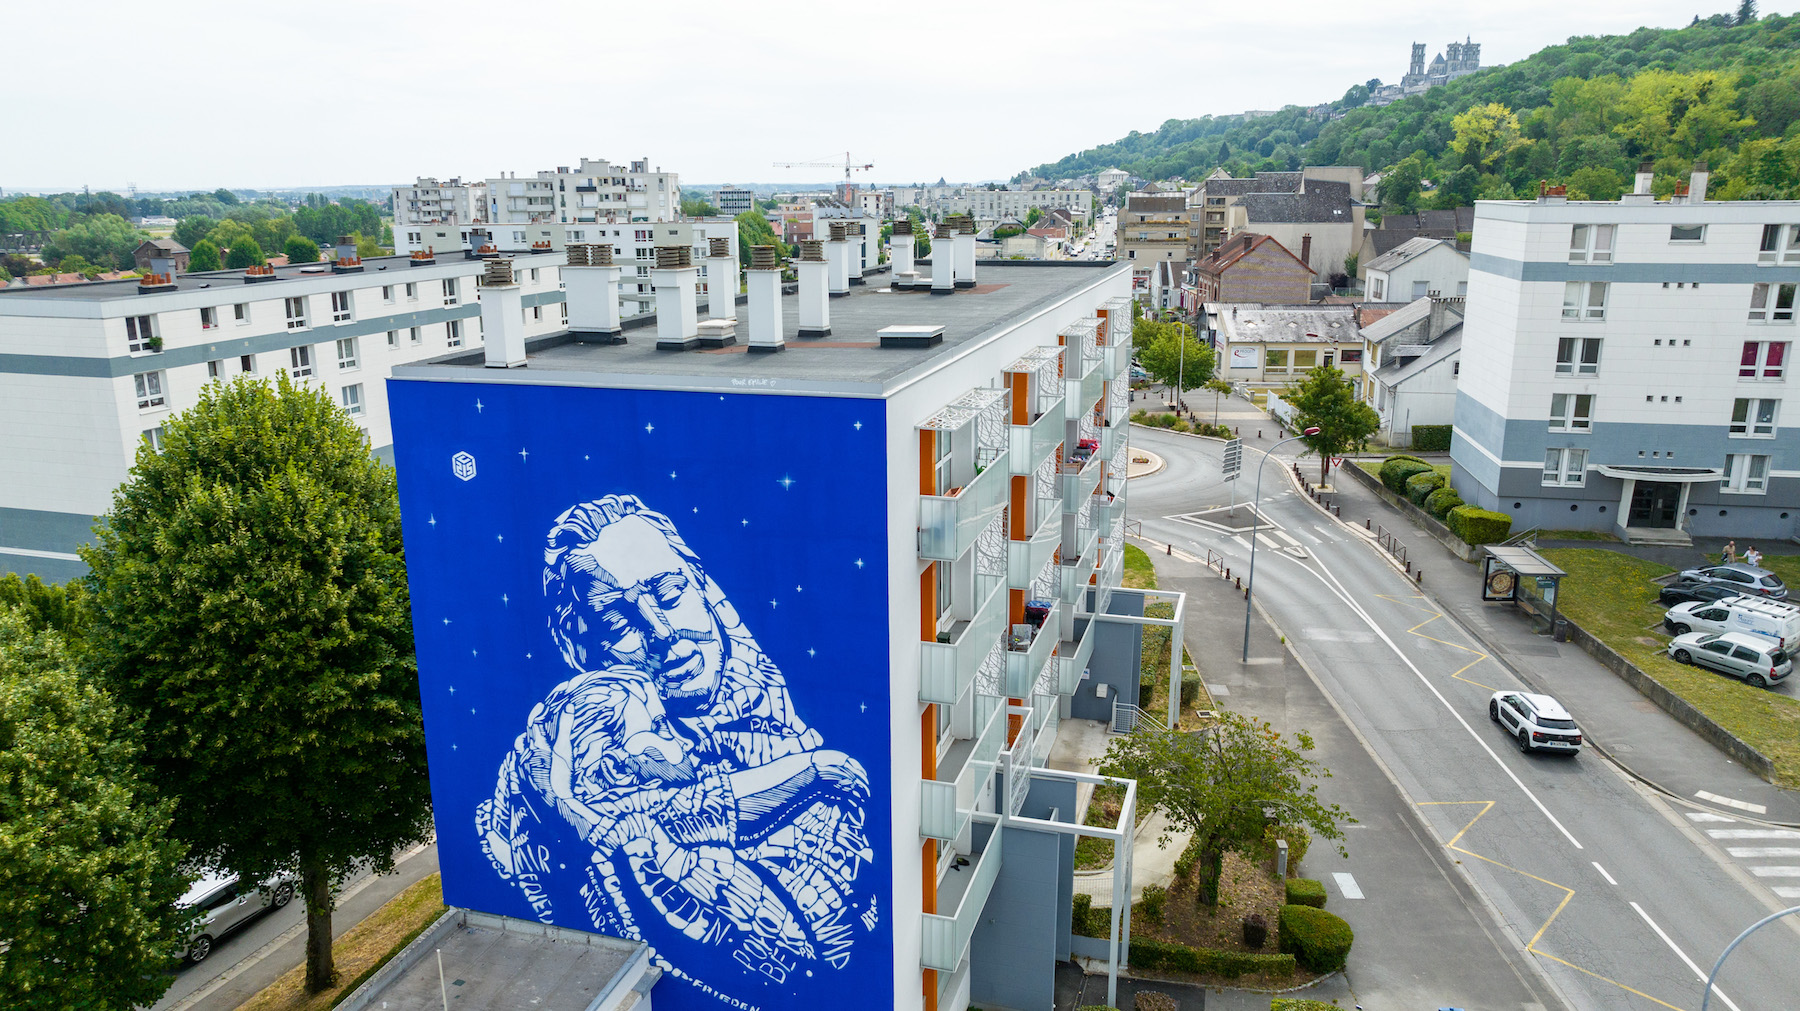 Laon Street Art Festival, France 2022